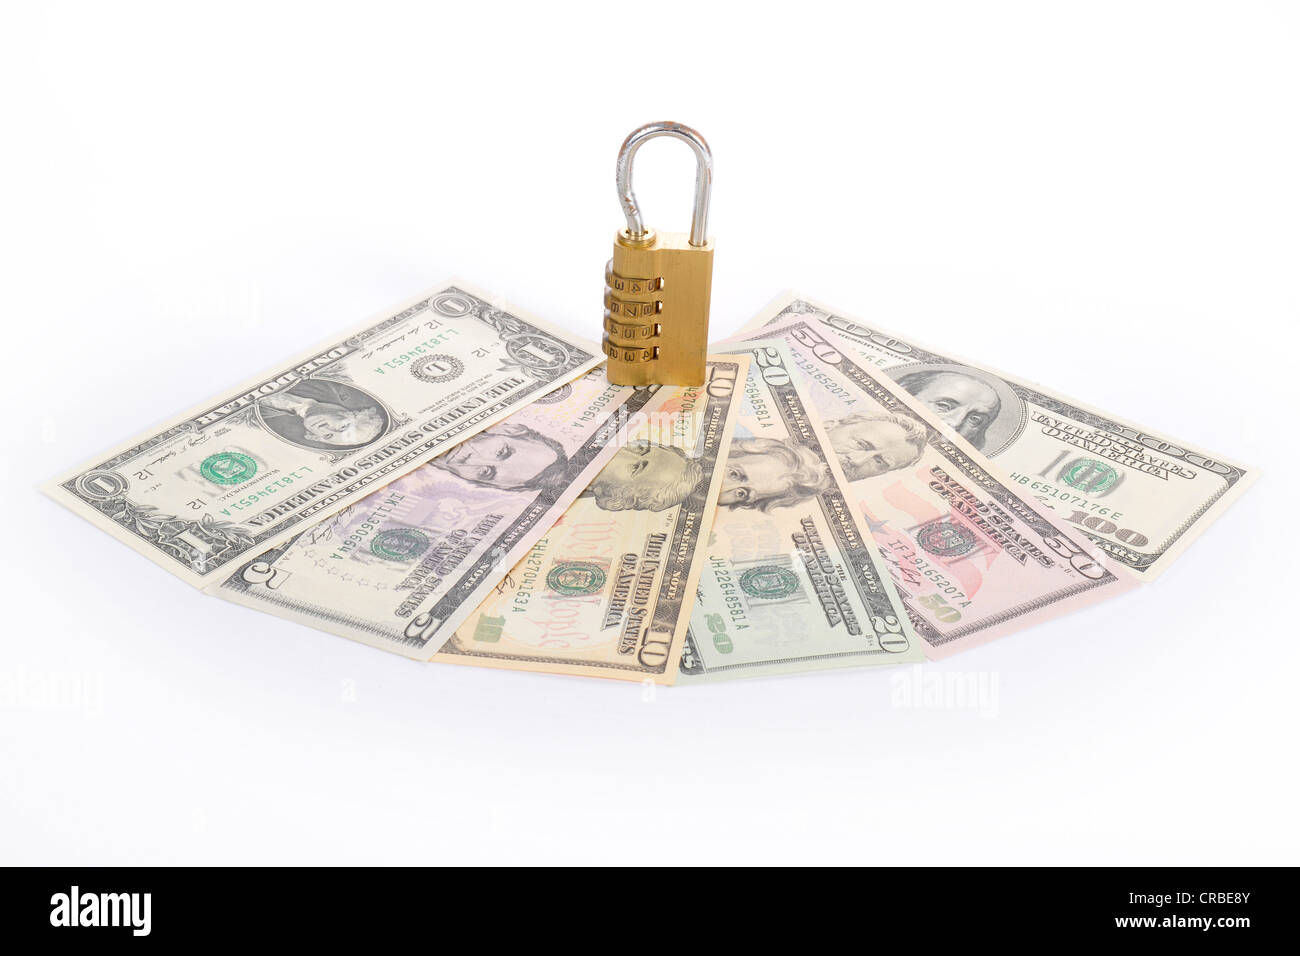 Cerradura de combinación de billetes de dólar estadounidense, imagen simbólica de seguridad monetaria Foto de stock